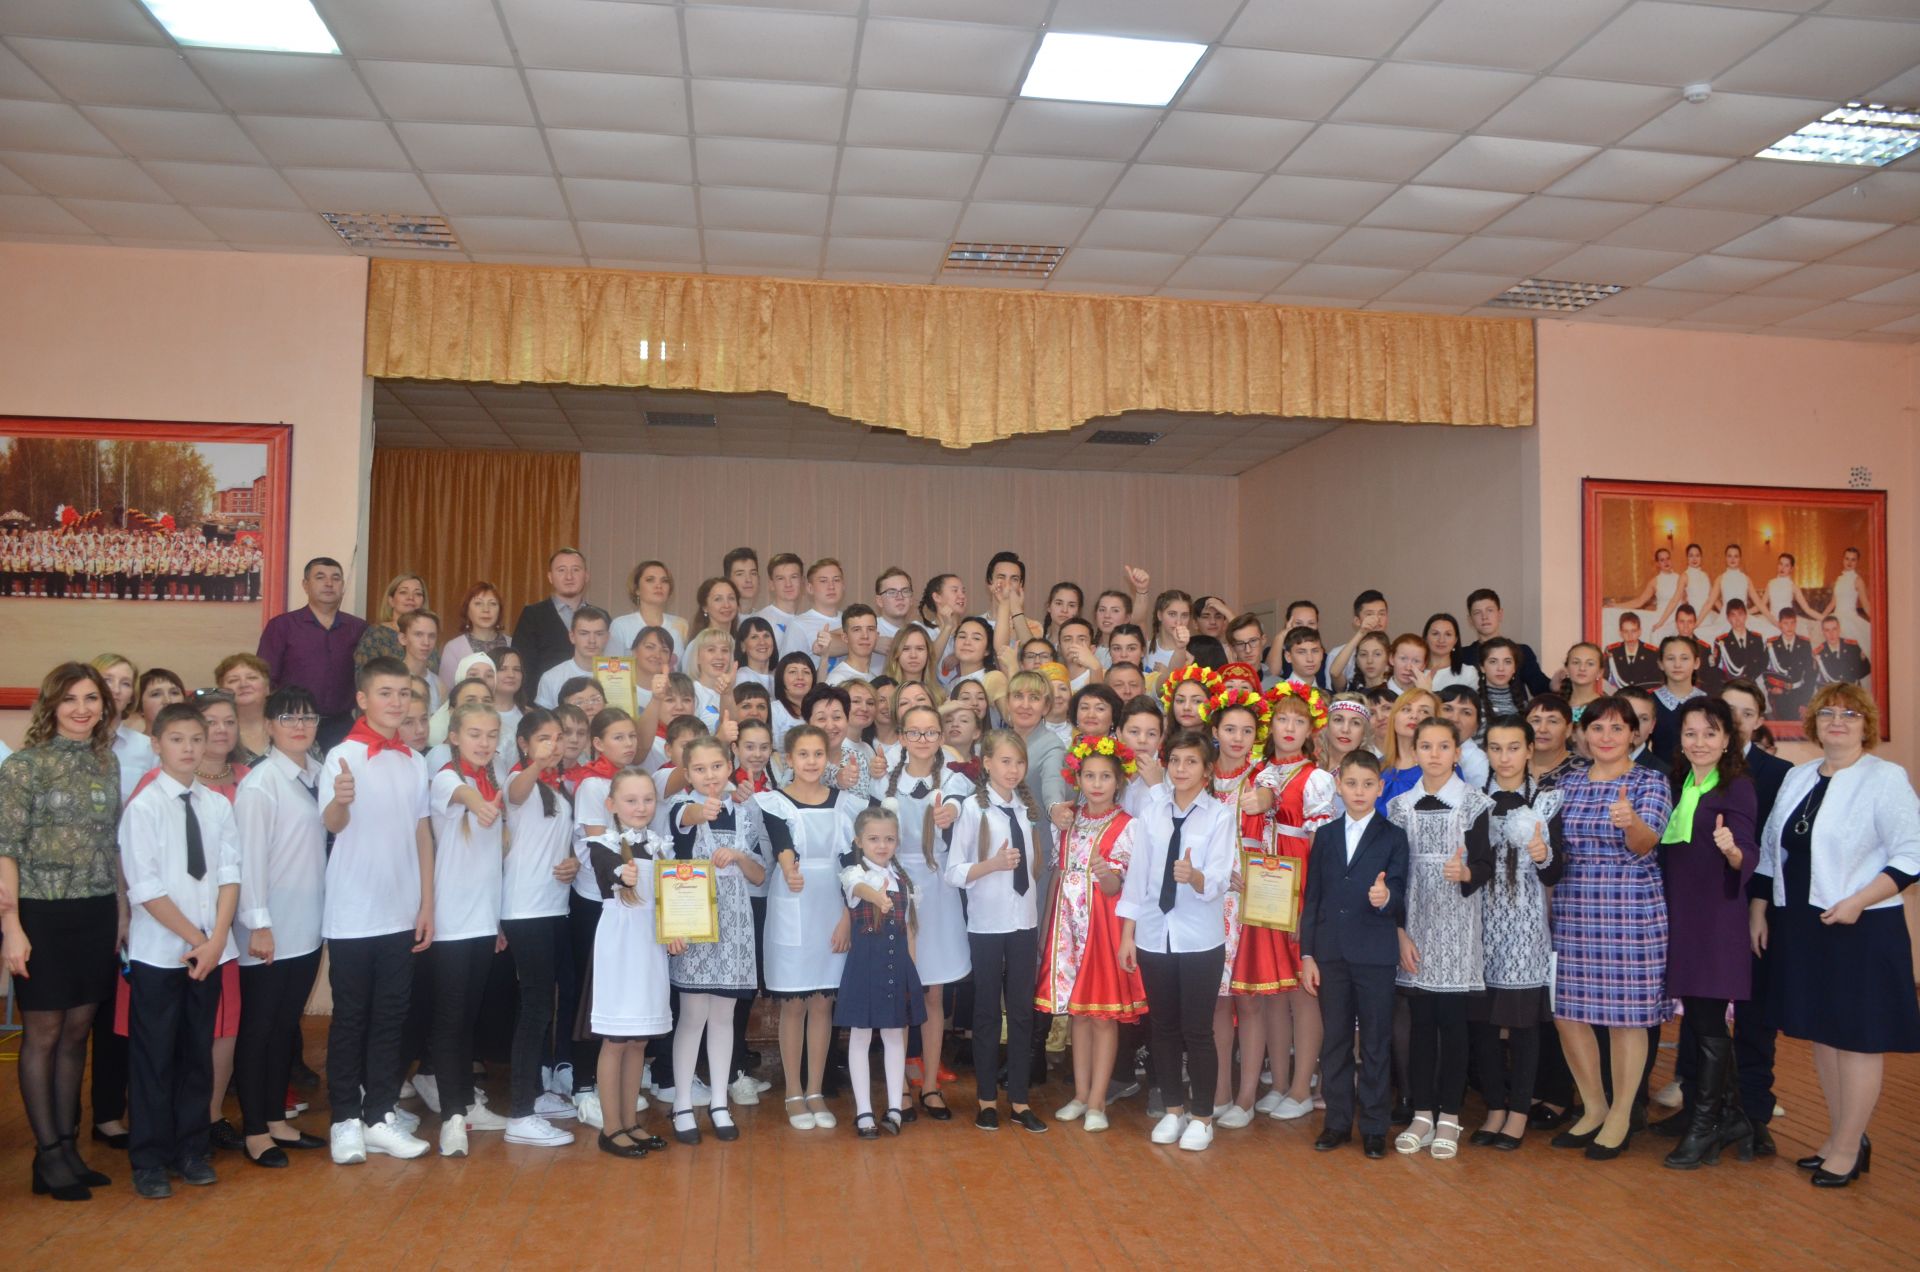 Команда Сарсак-Омгинского лицея стала победителем в номинации "Самый артистичный коллектив" на конкурсе родительских комитетов